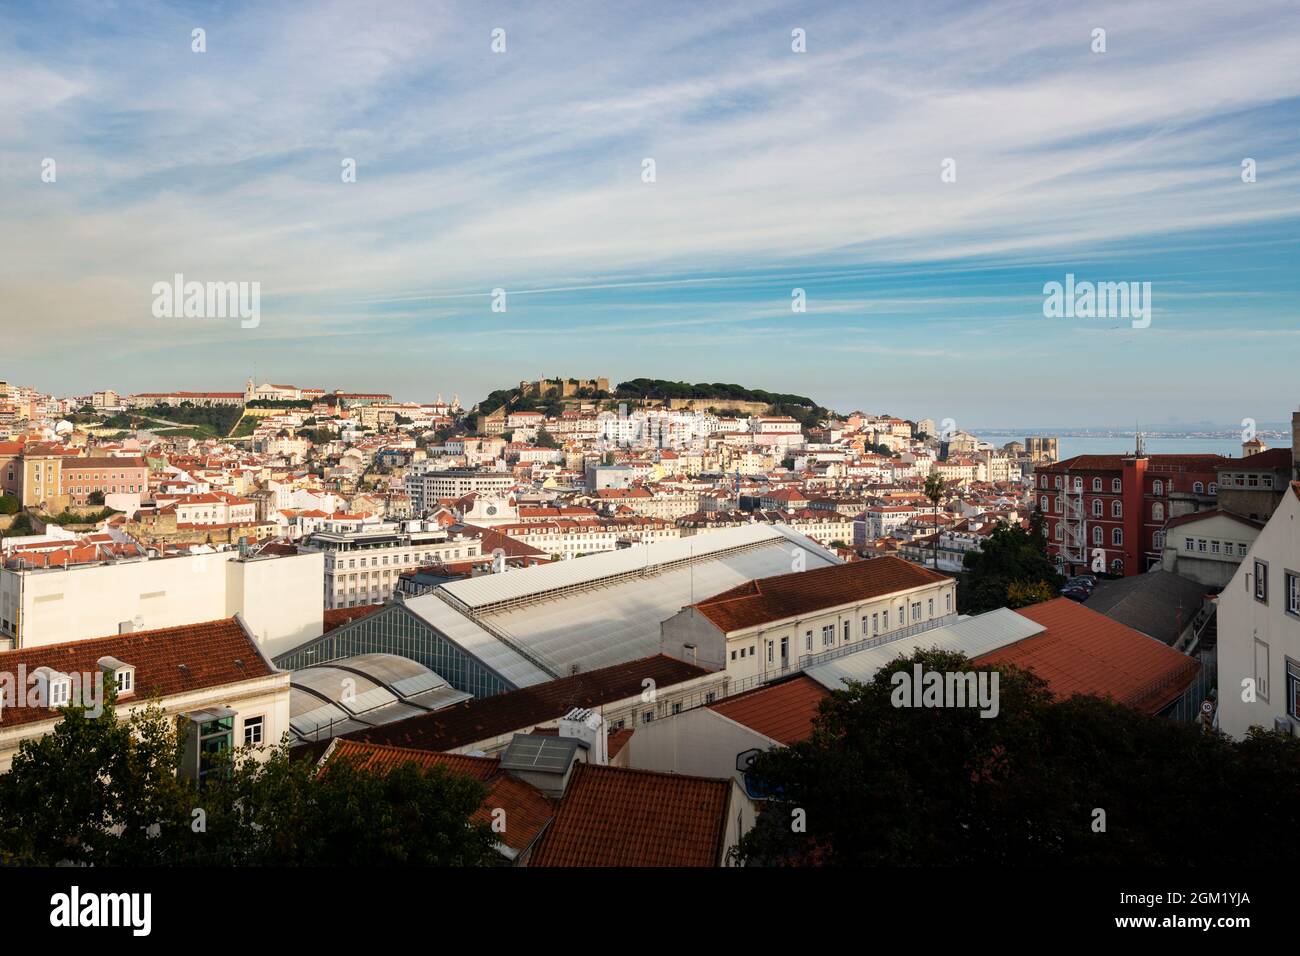 Lisboa, Portugal - 12 de noviembre de 2015: Hermosa vista del centro de la ciudad de Lisboa desde el mirador de San Pedro de Alcantara, con los pombali Foto de stock